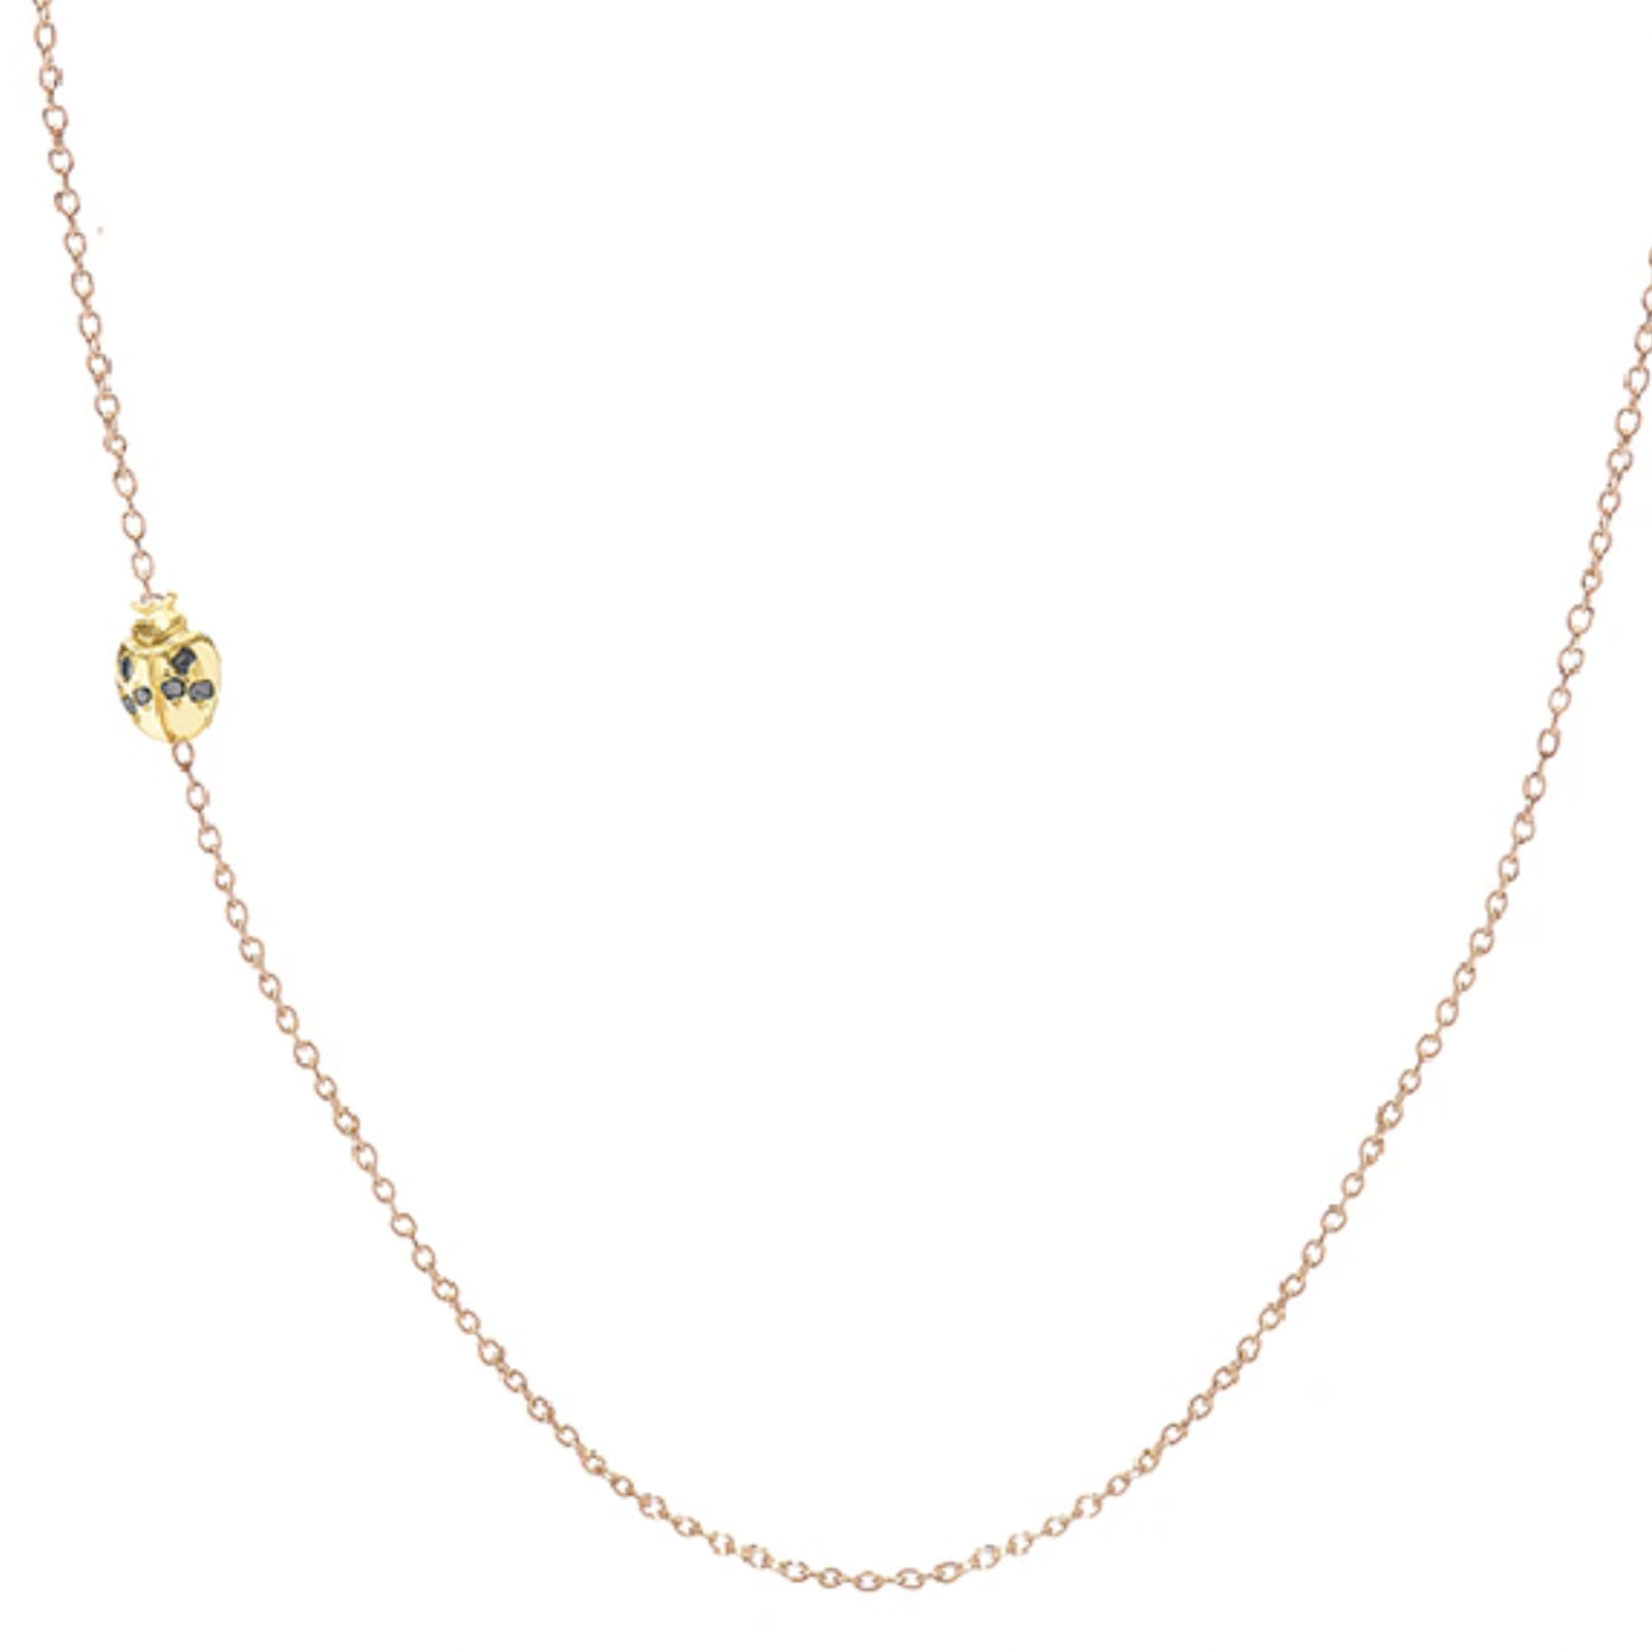 Jennie Kwon Designs Floating Diamond Ladybug Necklace